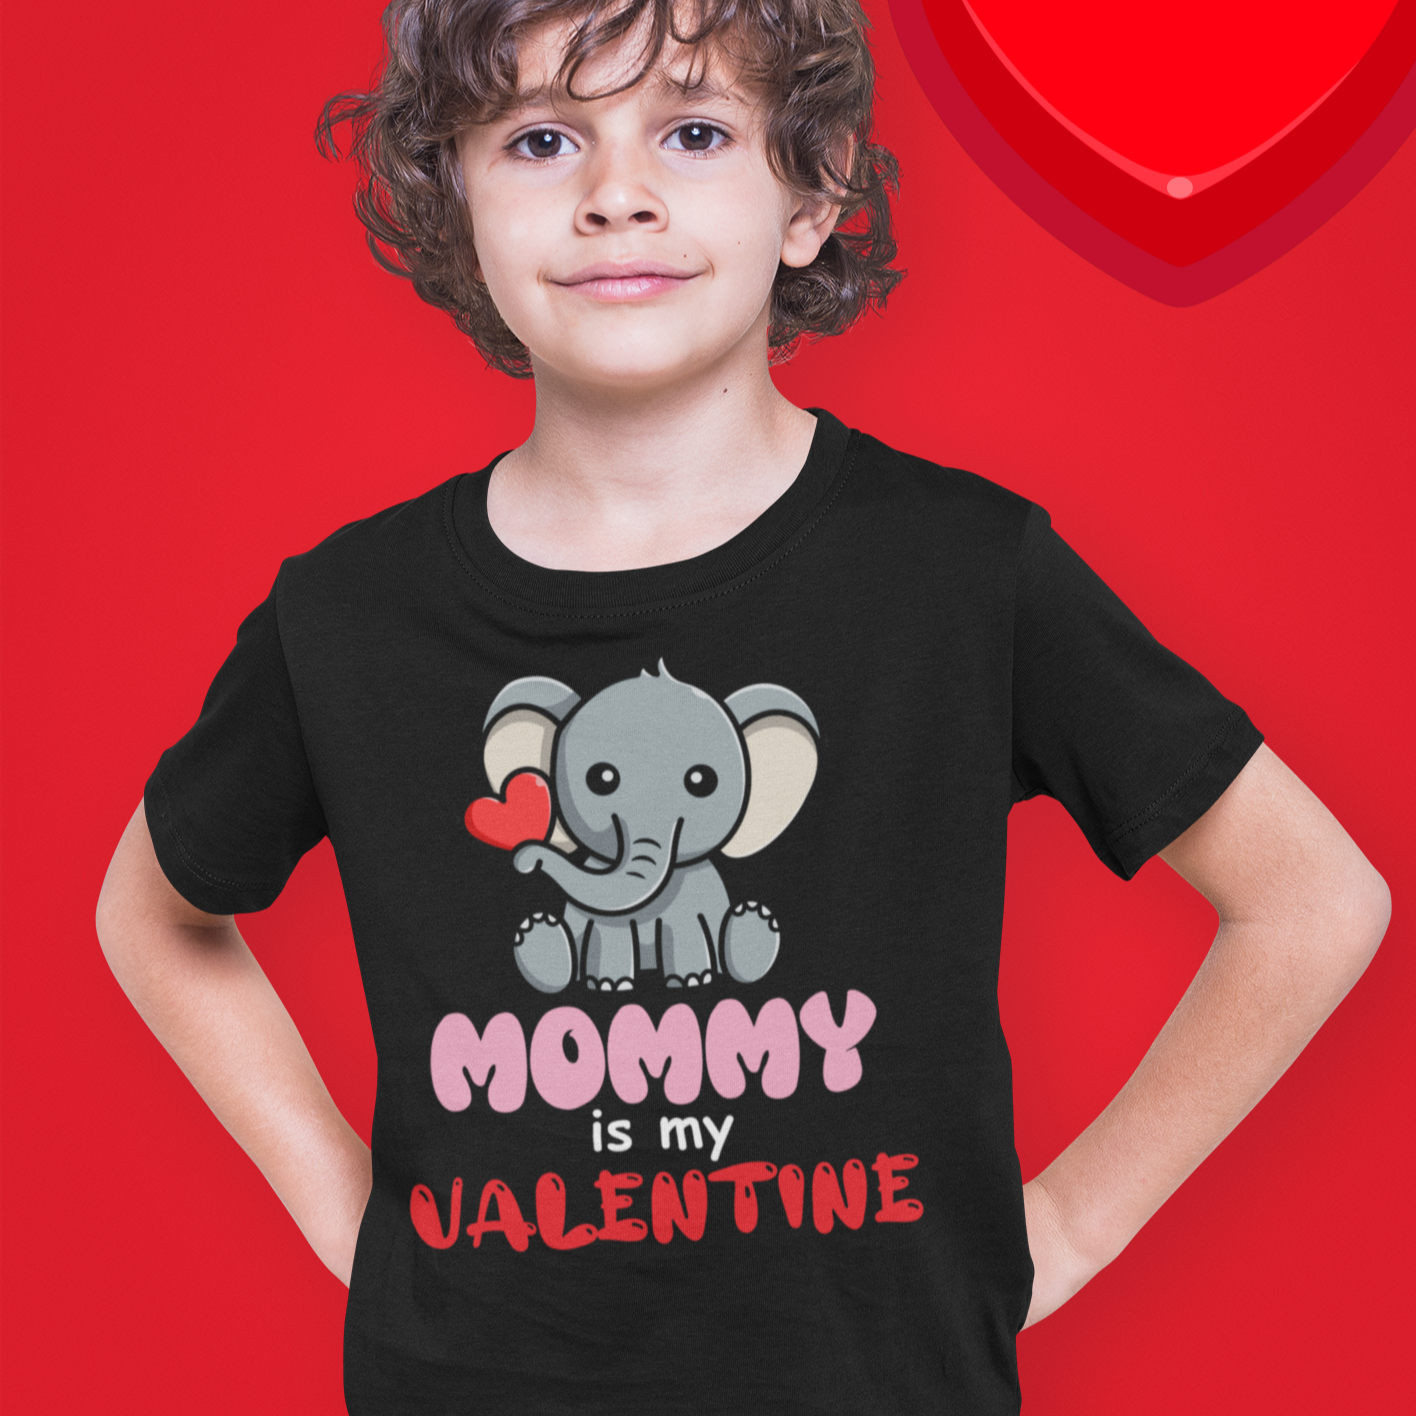 Mommy is my Valentine Kid's Shirt or Onesie - Wilson Design Group